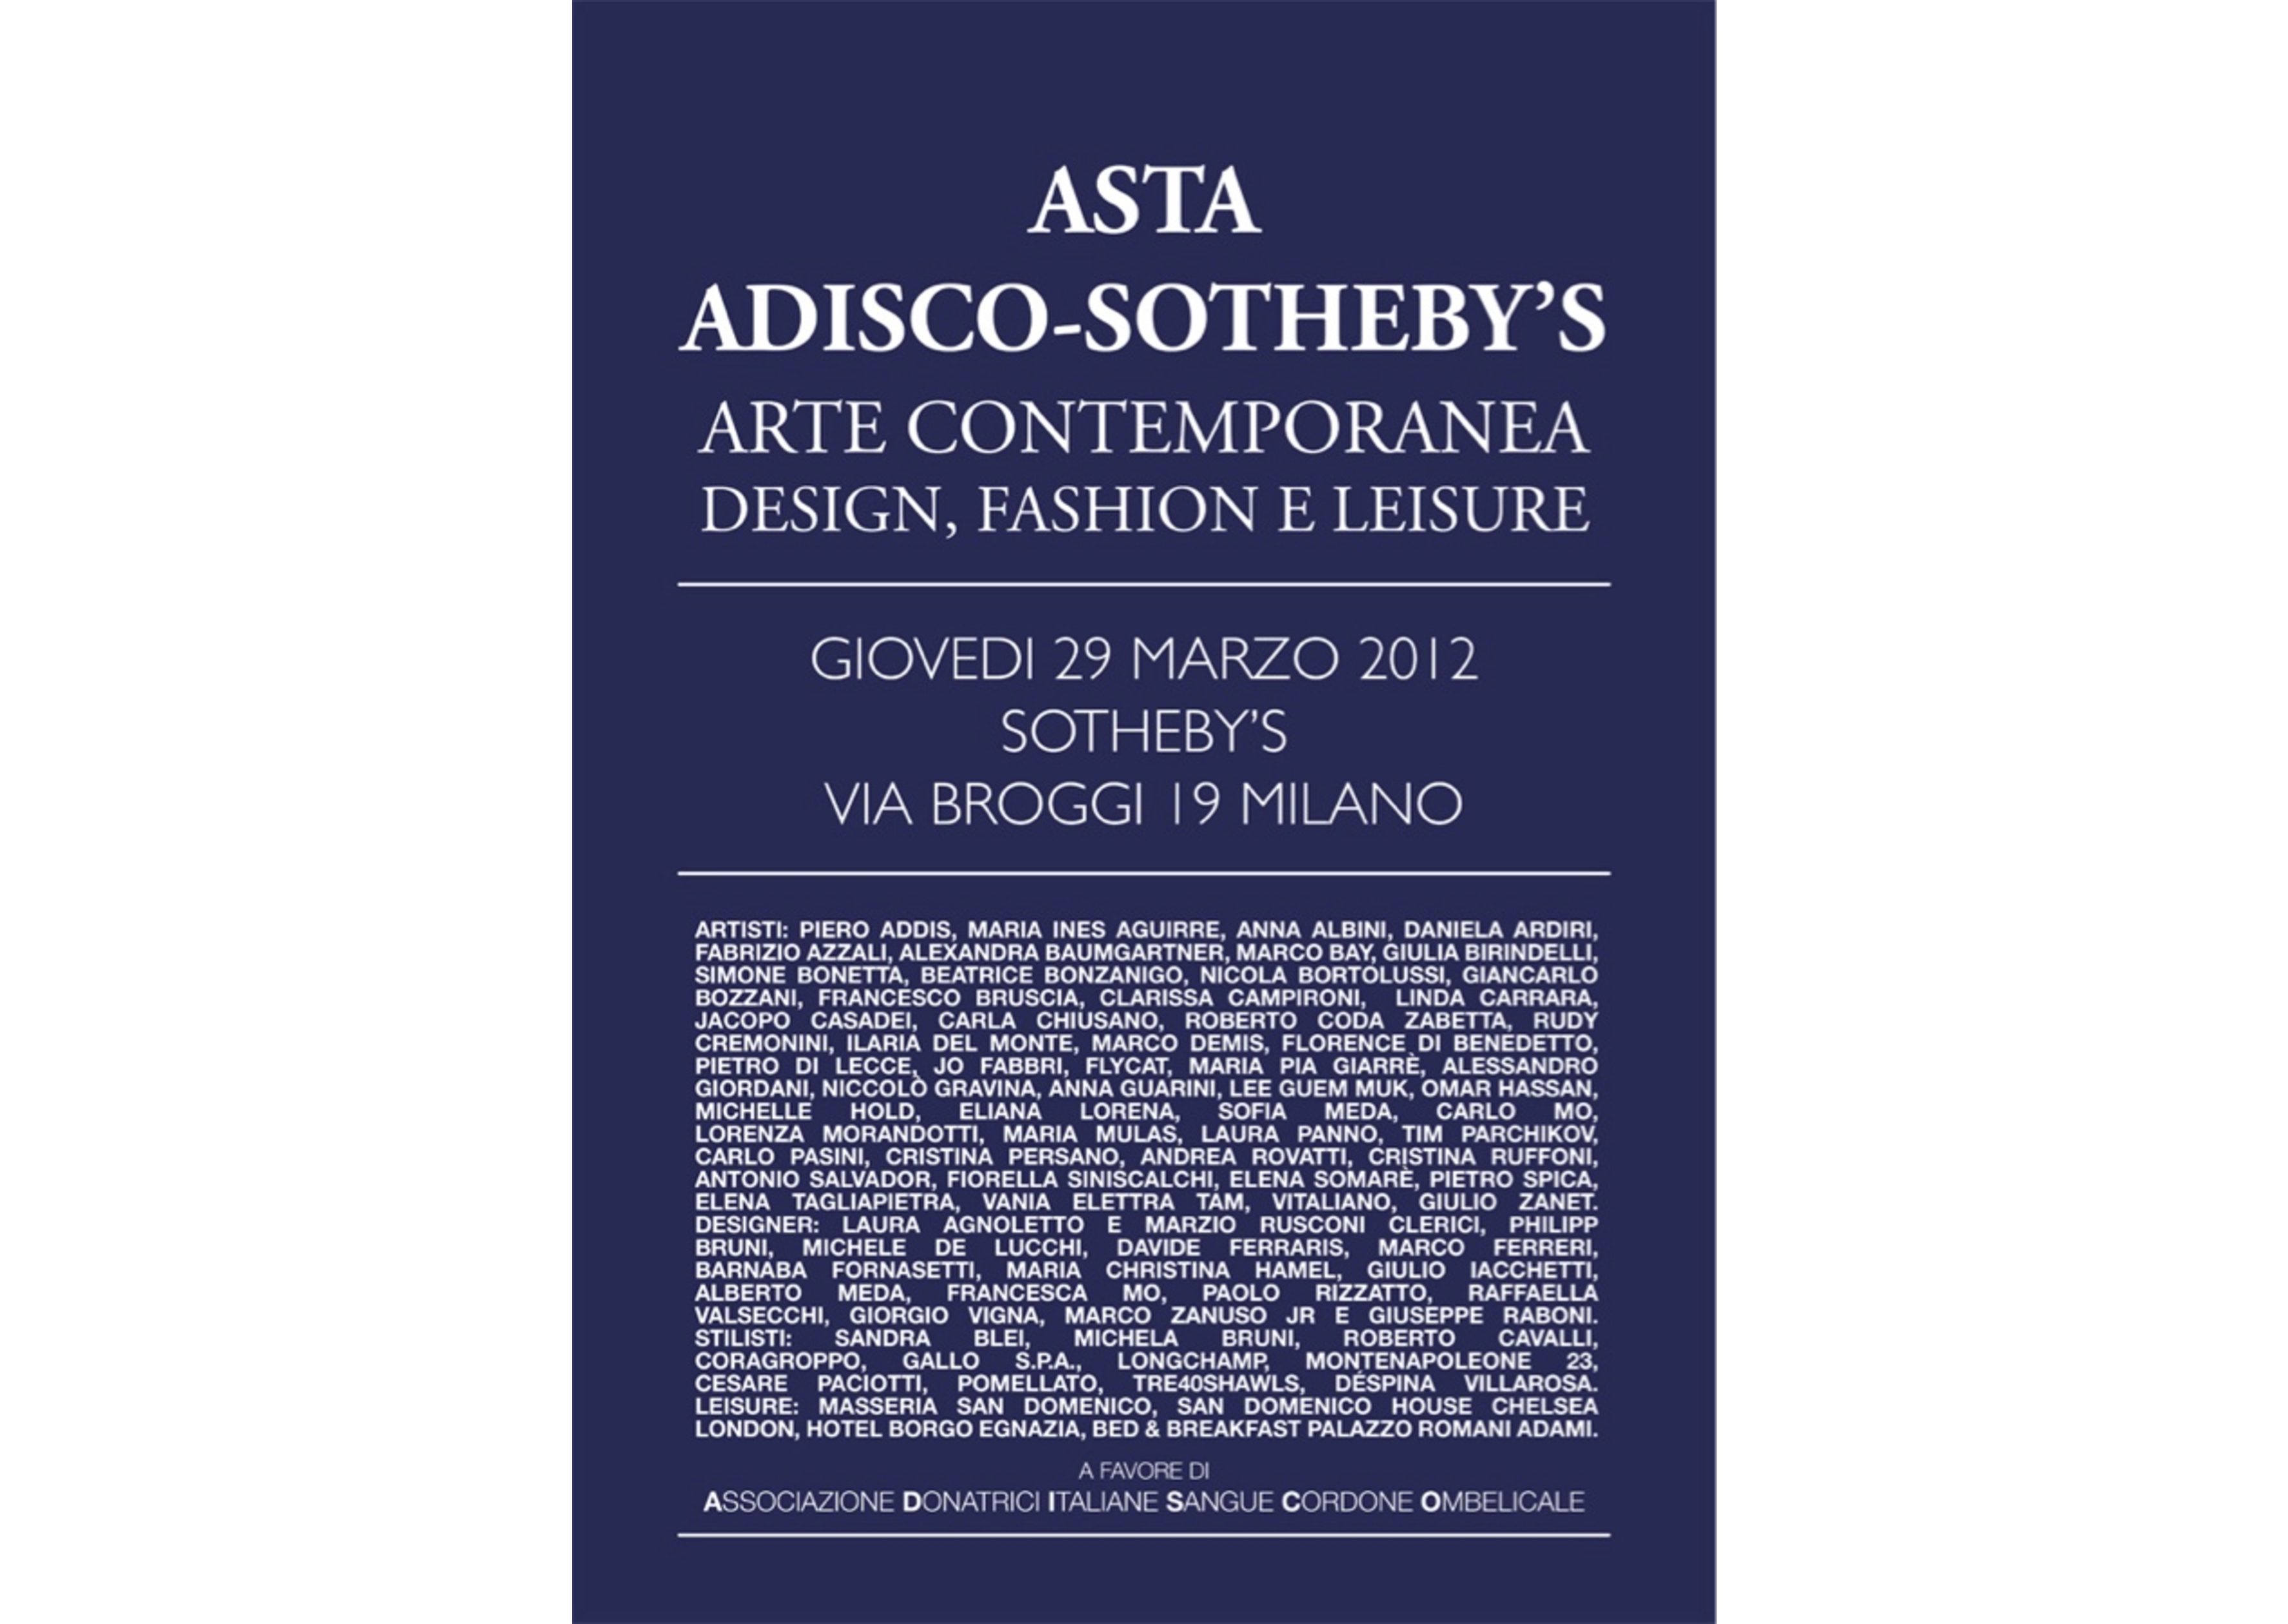 Catalogo Adisco-Sotheby’s 2012